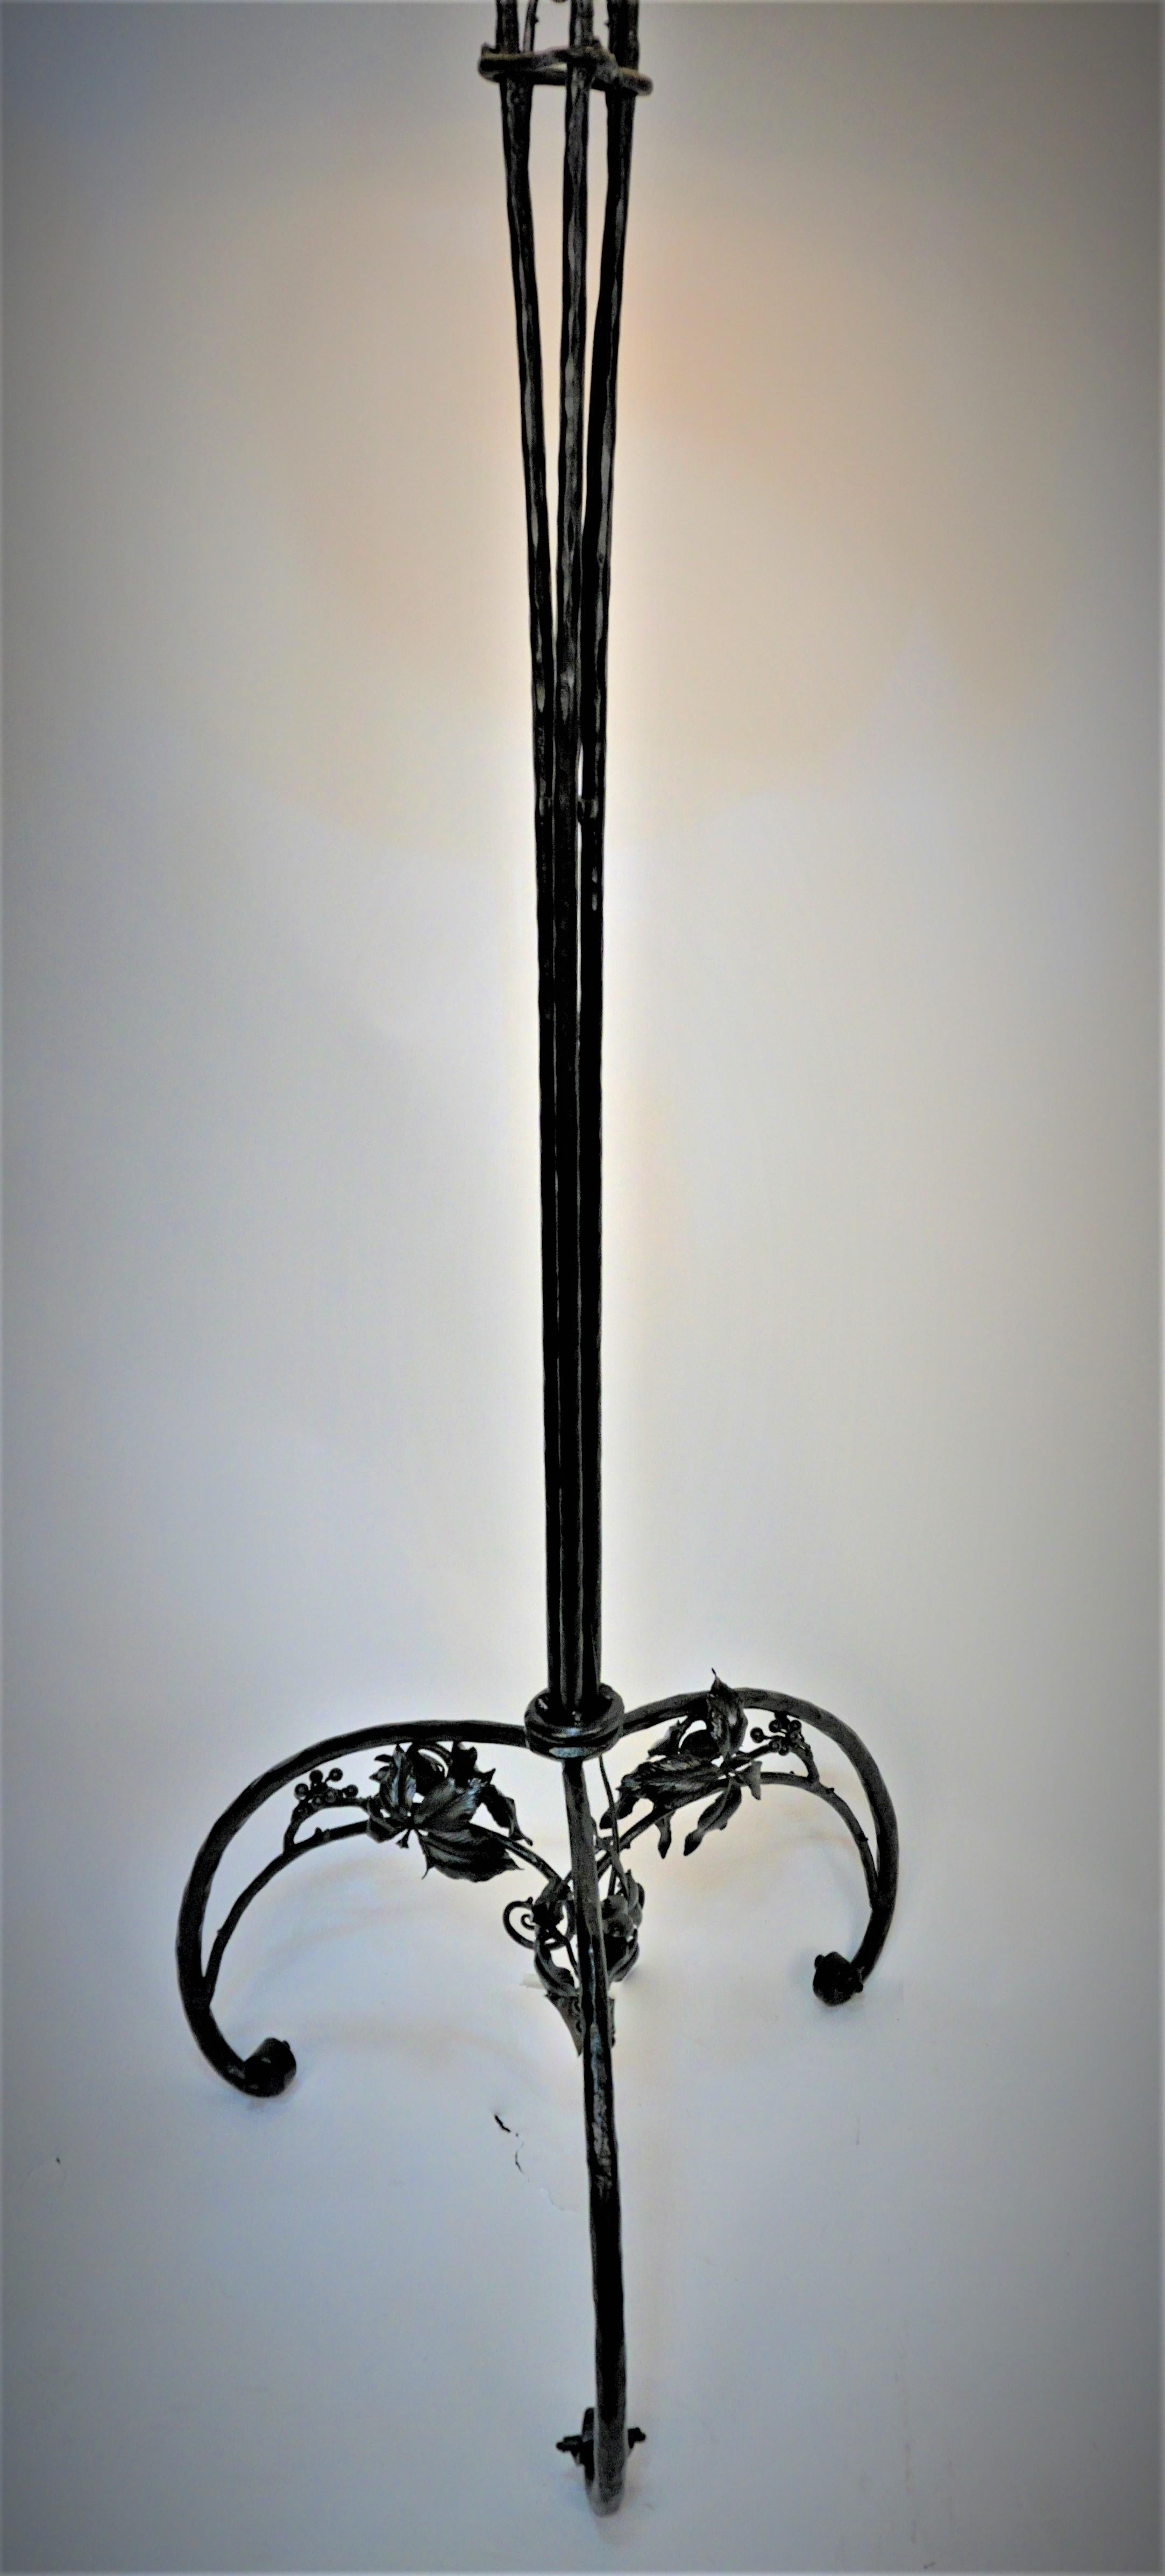 Elegante, handgefertigte Stehleuchte aus Schmiedeeisen mit schwarzer Lackierung.
Modifiziert mit 2 Zugkettenfassungen und einem maßgeschneiderten Lampenschirm.  

